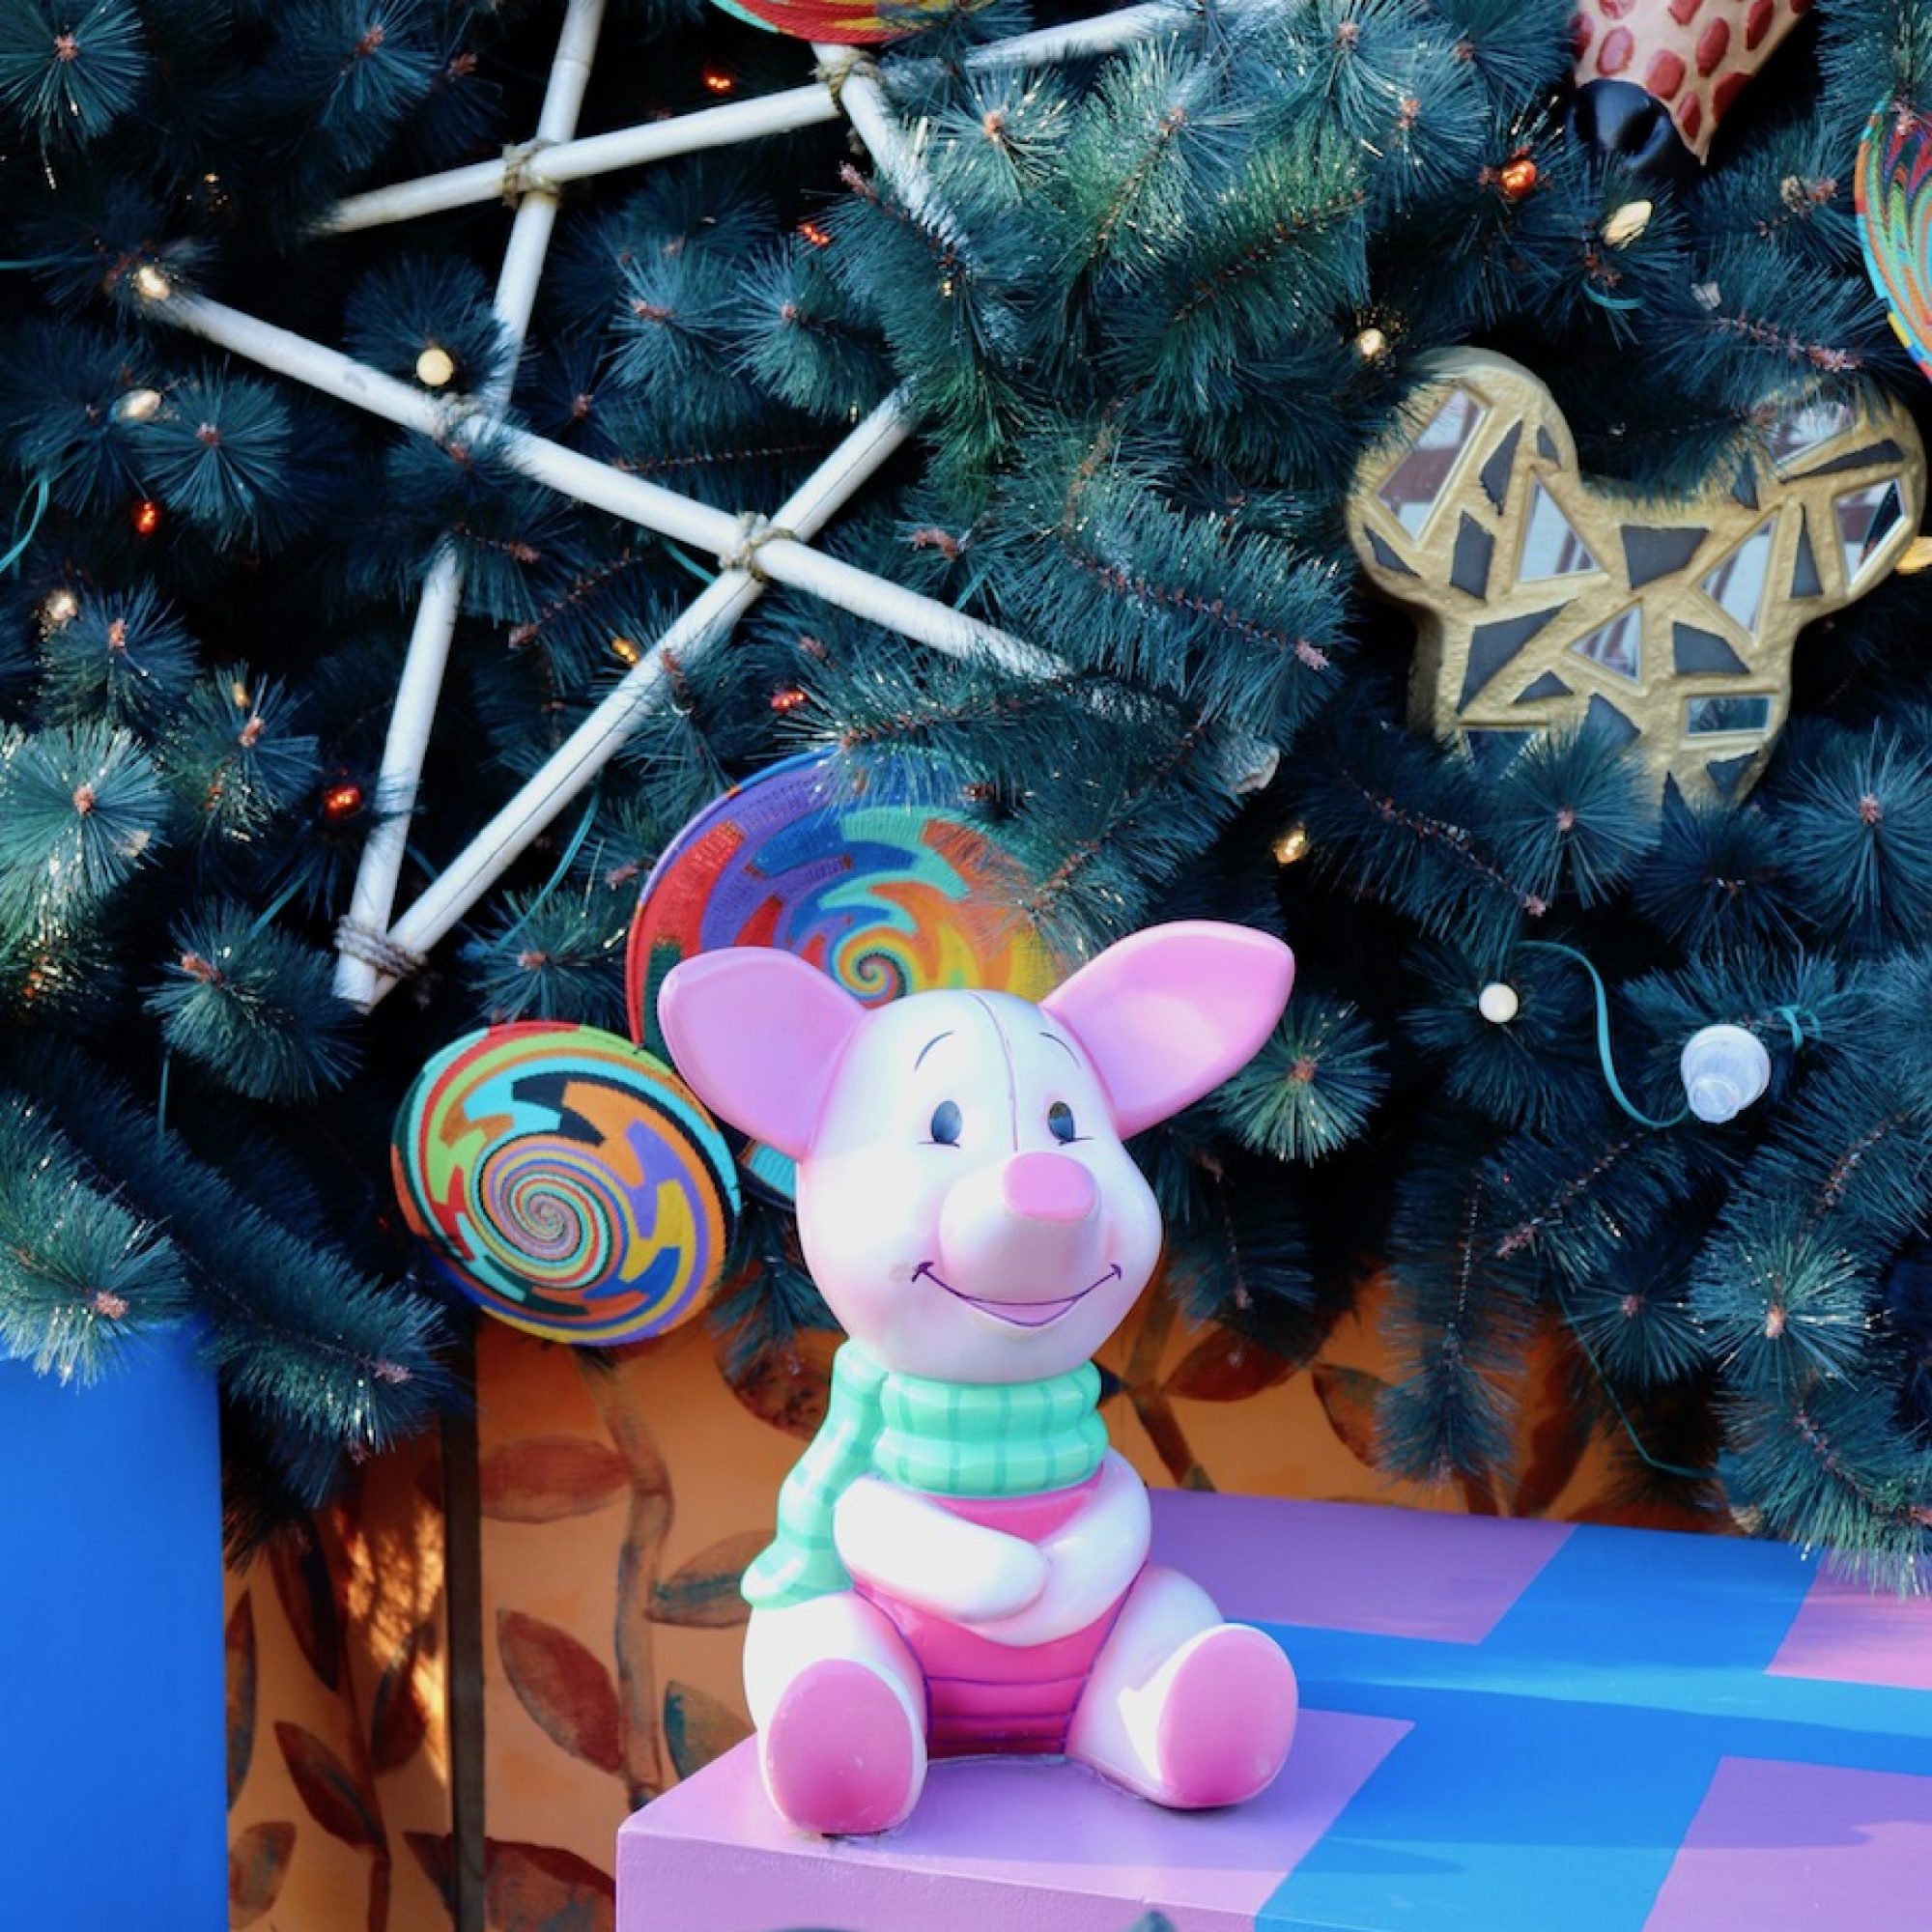 Piglet seated underneath Animal Kingdom's Christmas Tree.